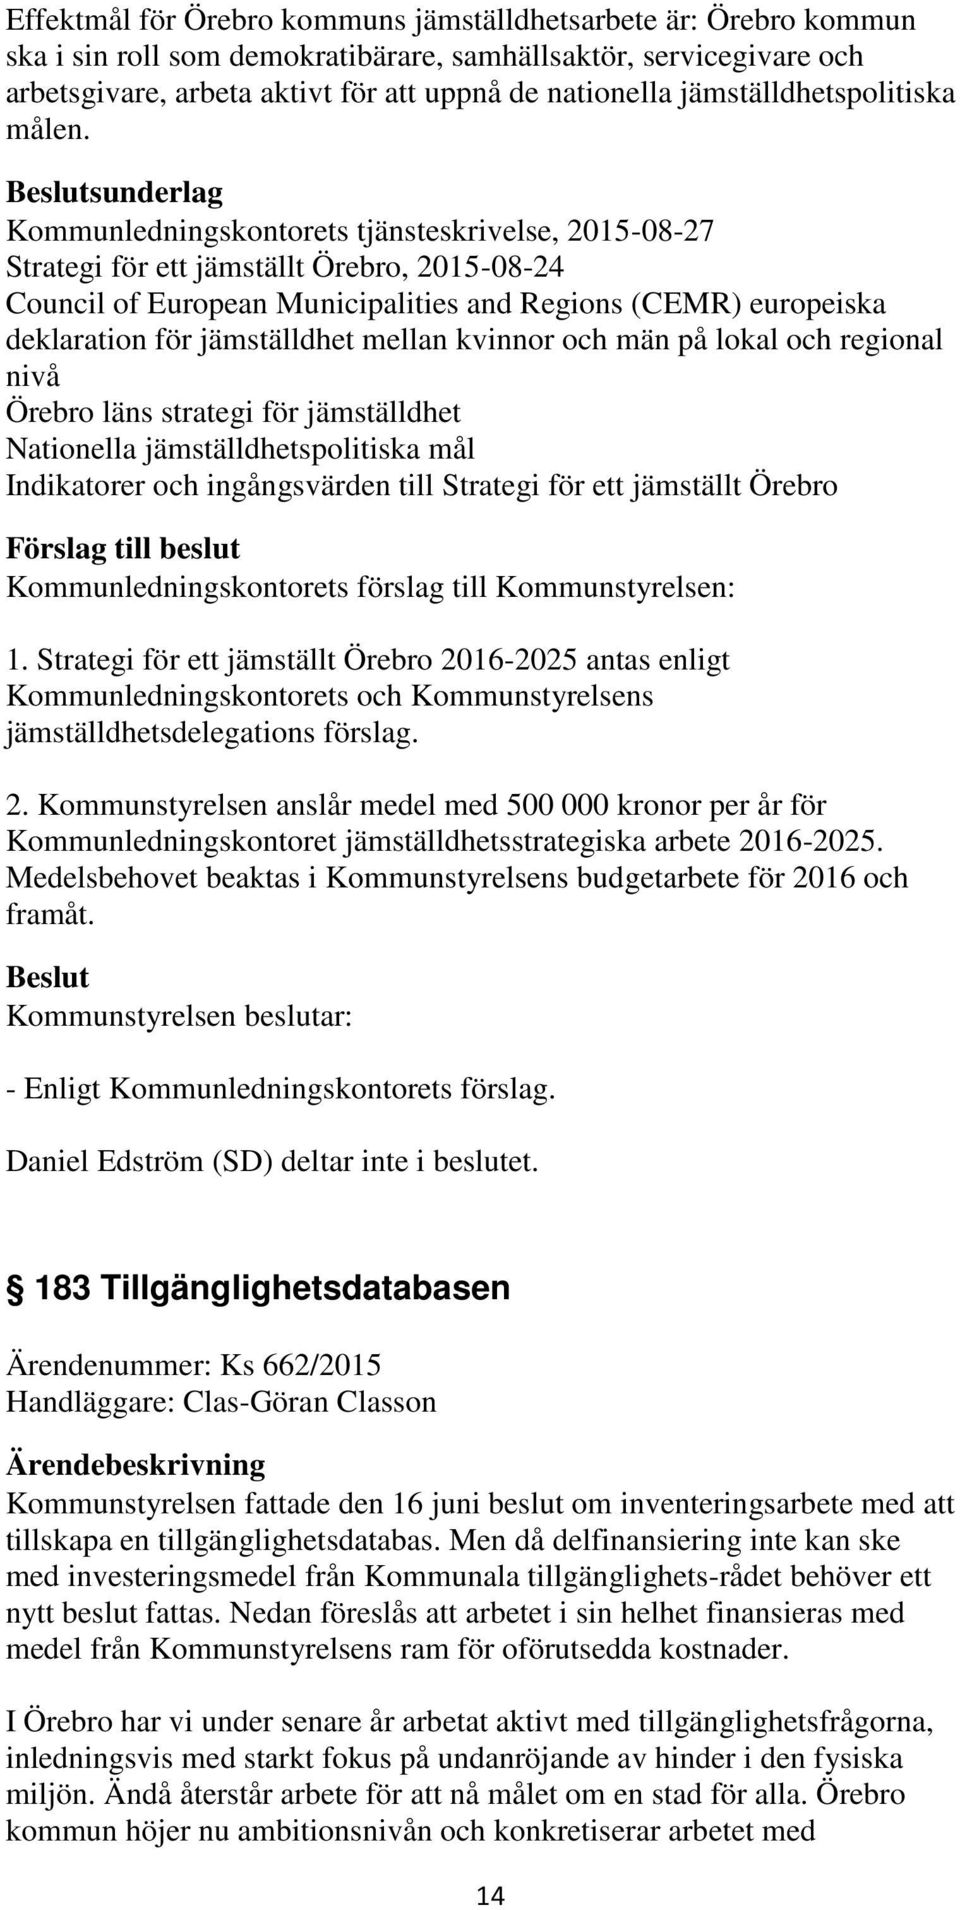 sunderlag Kommunledningskontorets tjänsteskrivelse, 2015-08-27 Strategi för ett jämställt Örebro, 2015-08-24 Council of European Municipalities and Regions (CEMR) europeiska deklaration för